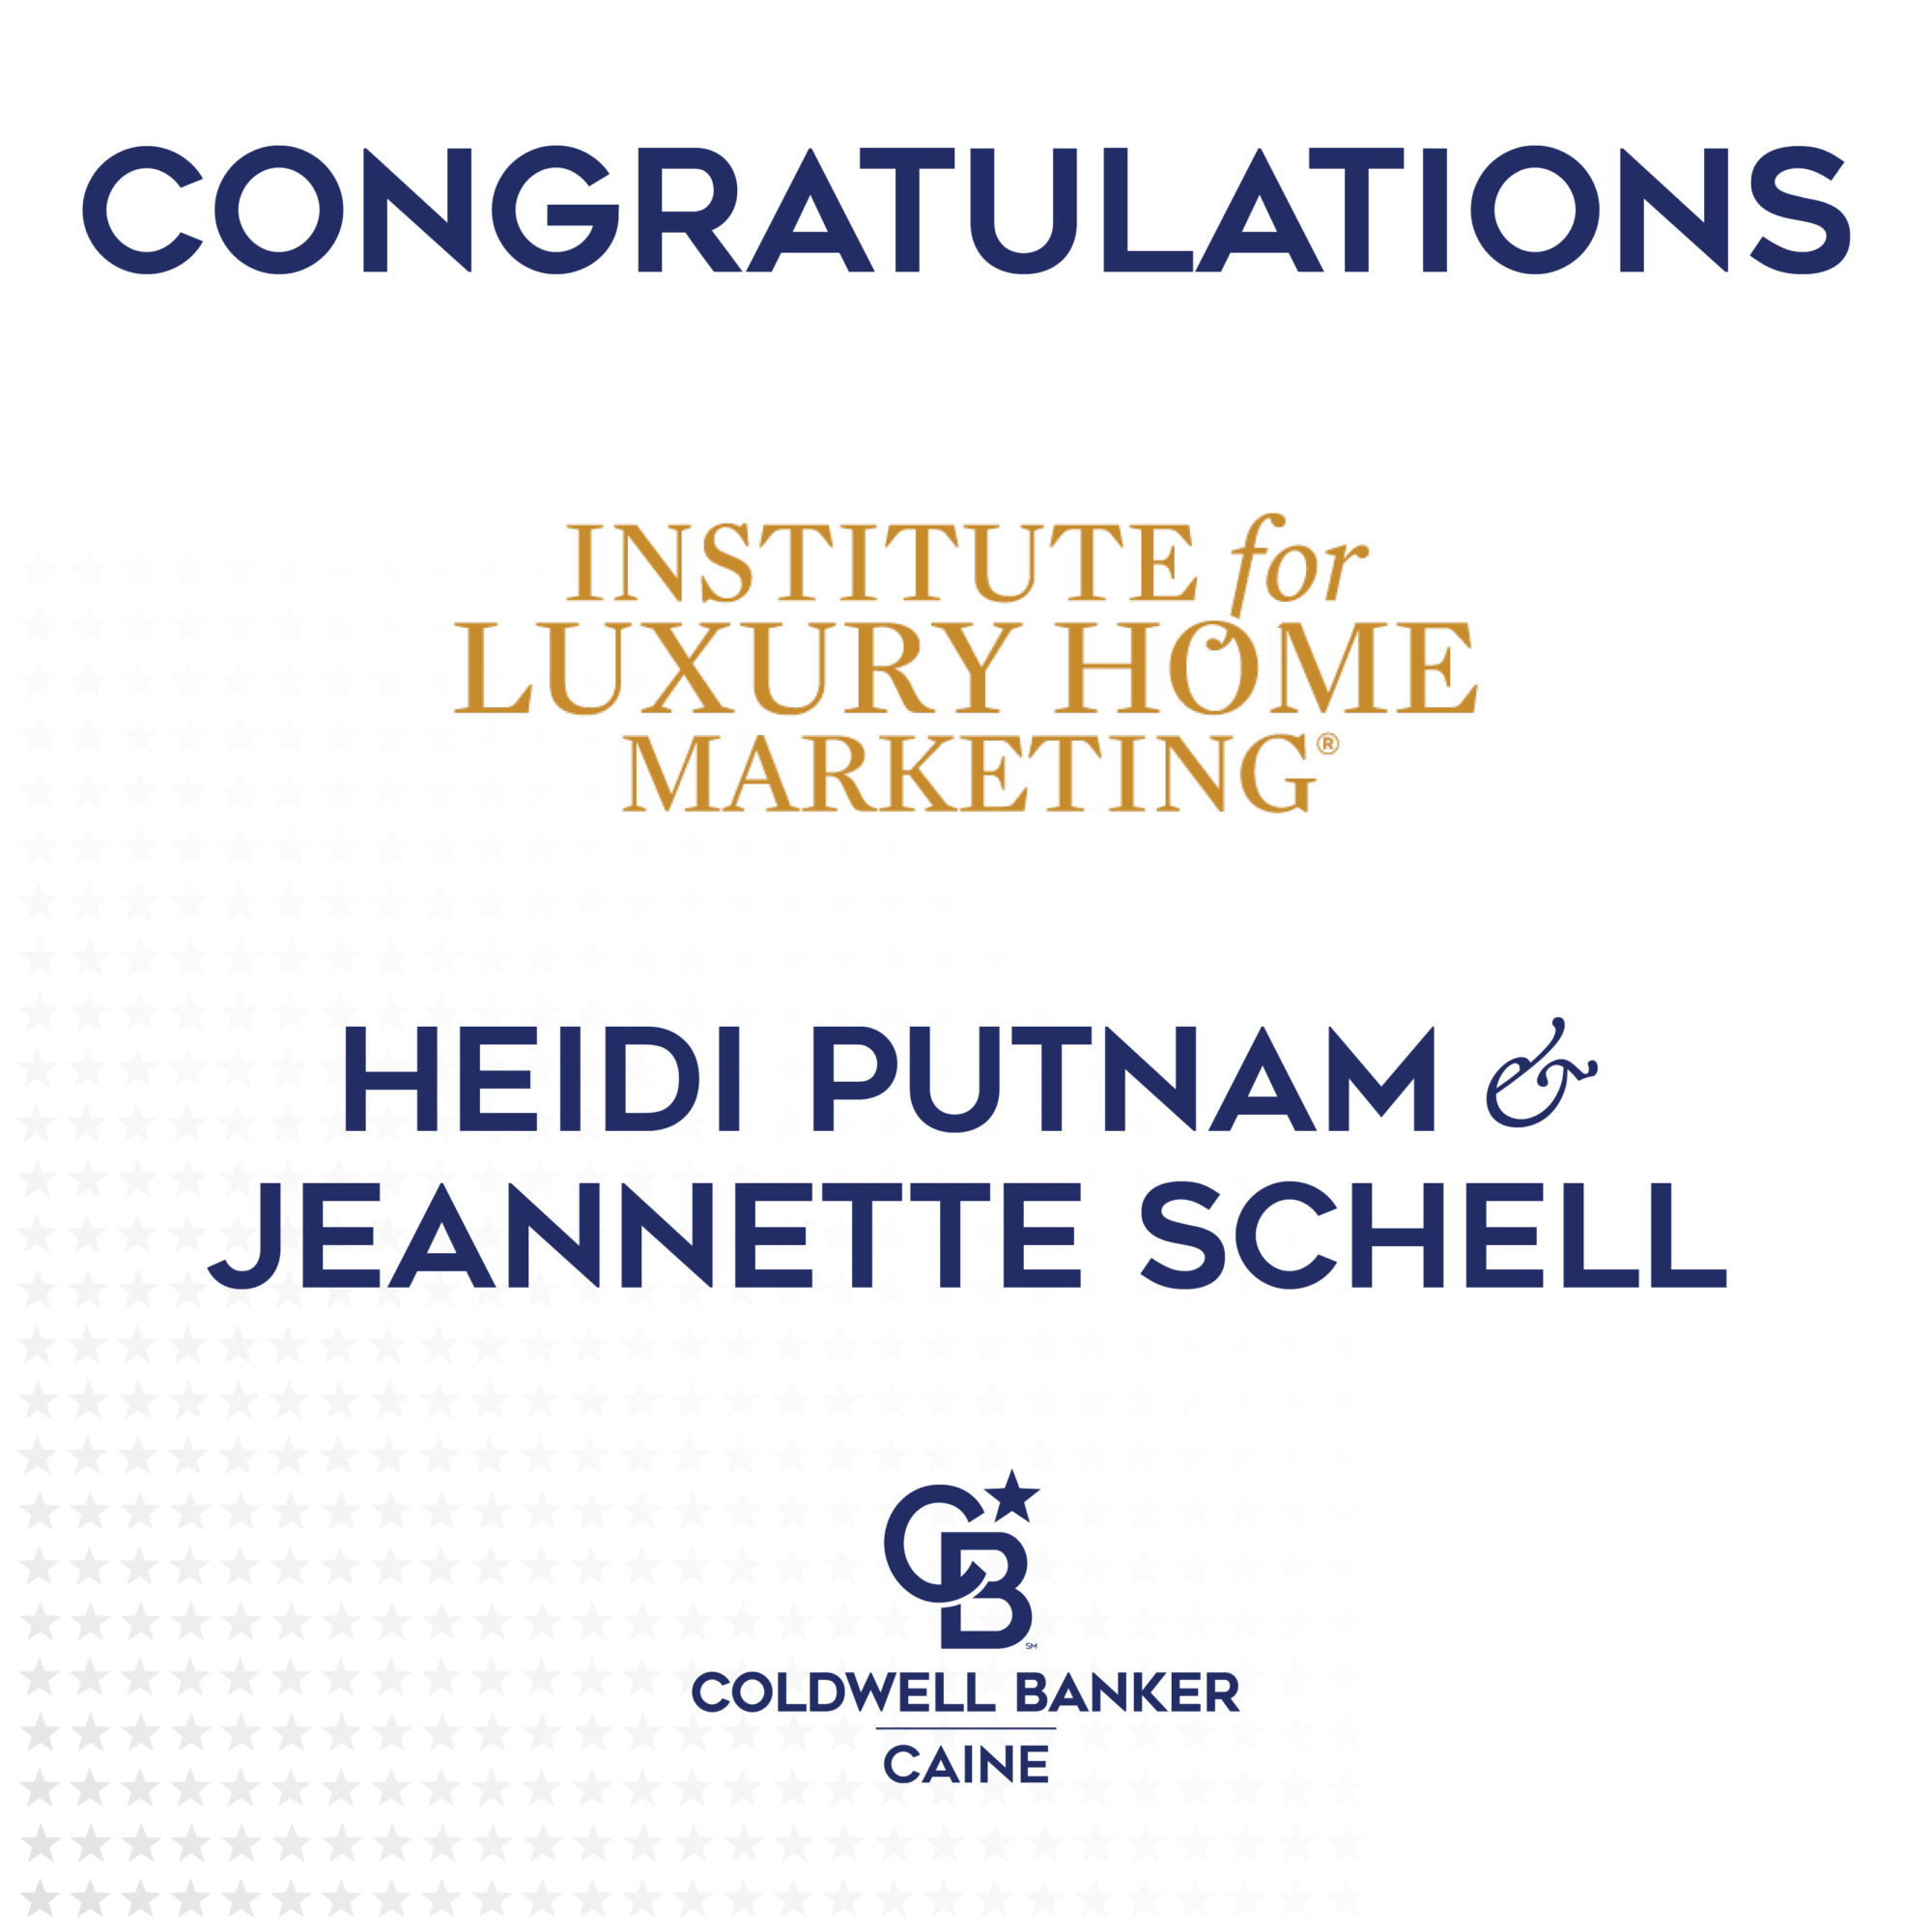 Heidi Putnam and Jeannette Schell Receive Luxury Marketing Designation